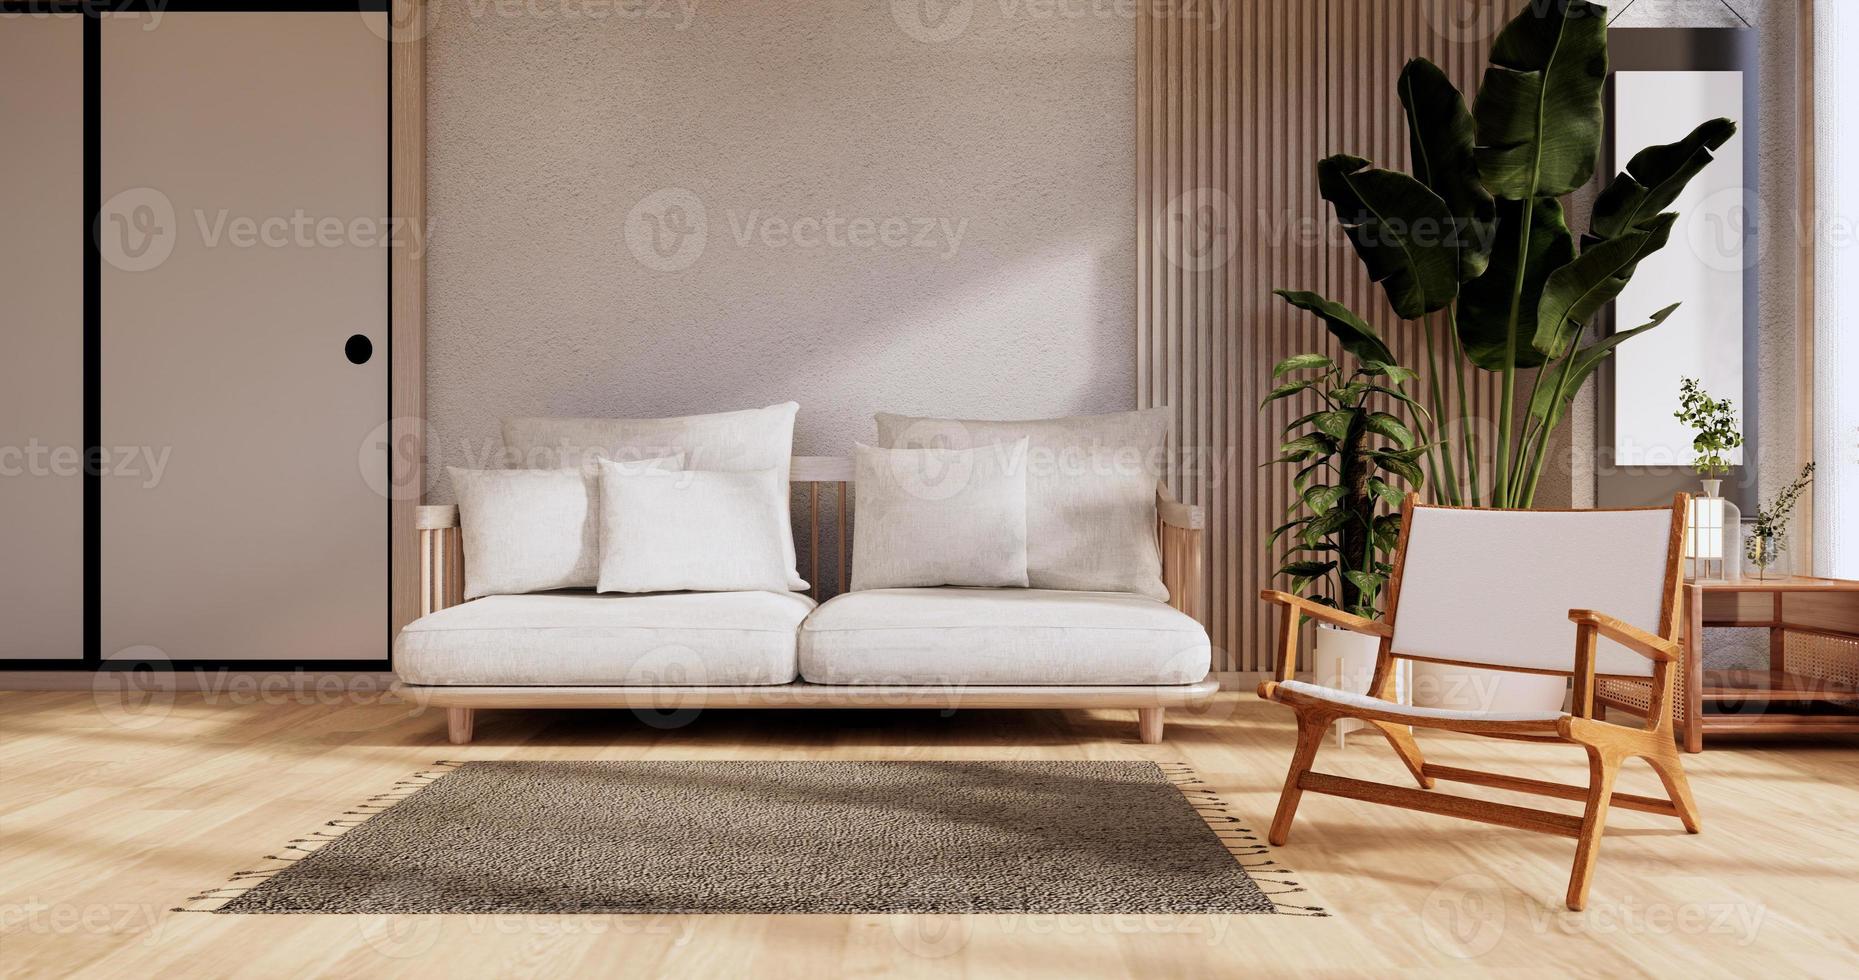 Sofamöbel und modernes Raumdesign minimal.3D-Rendering foto